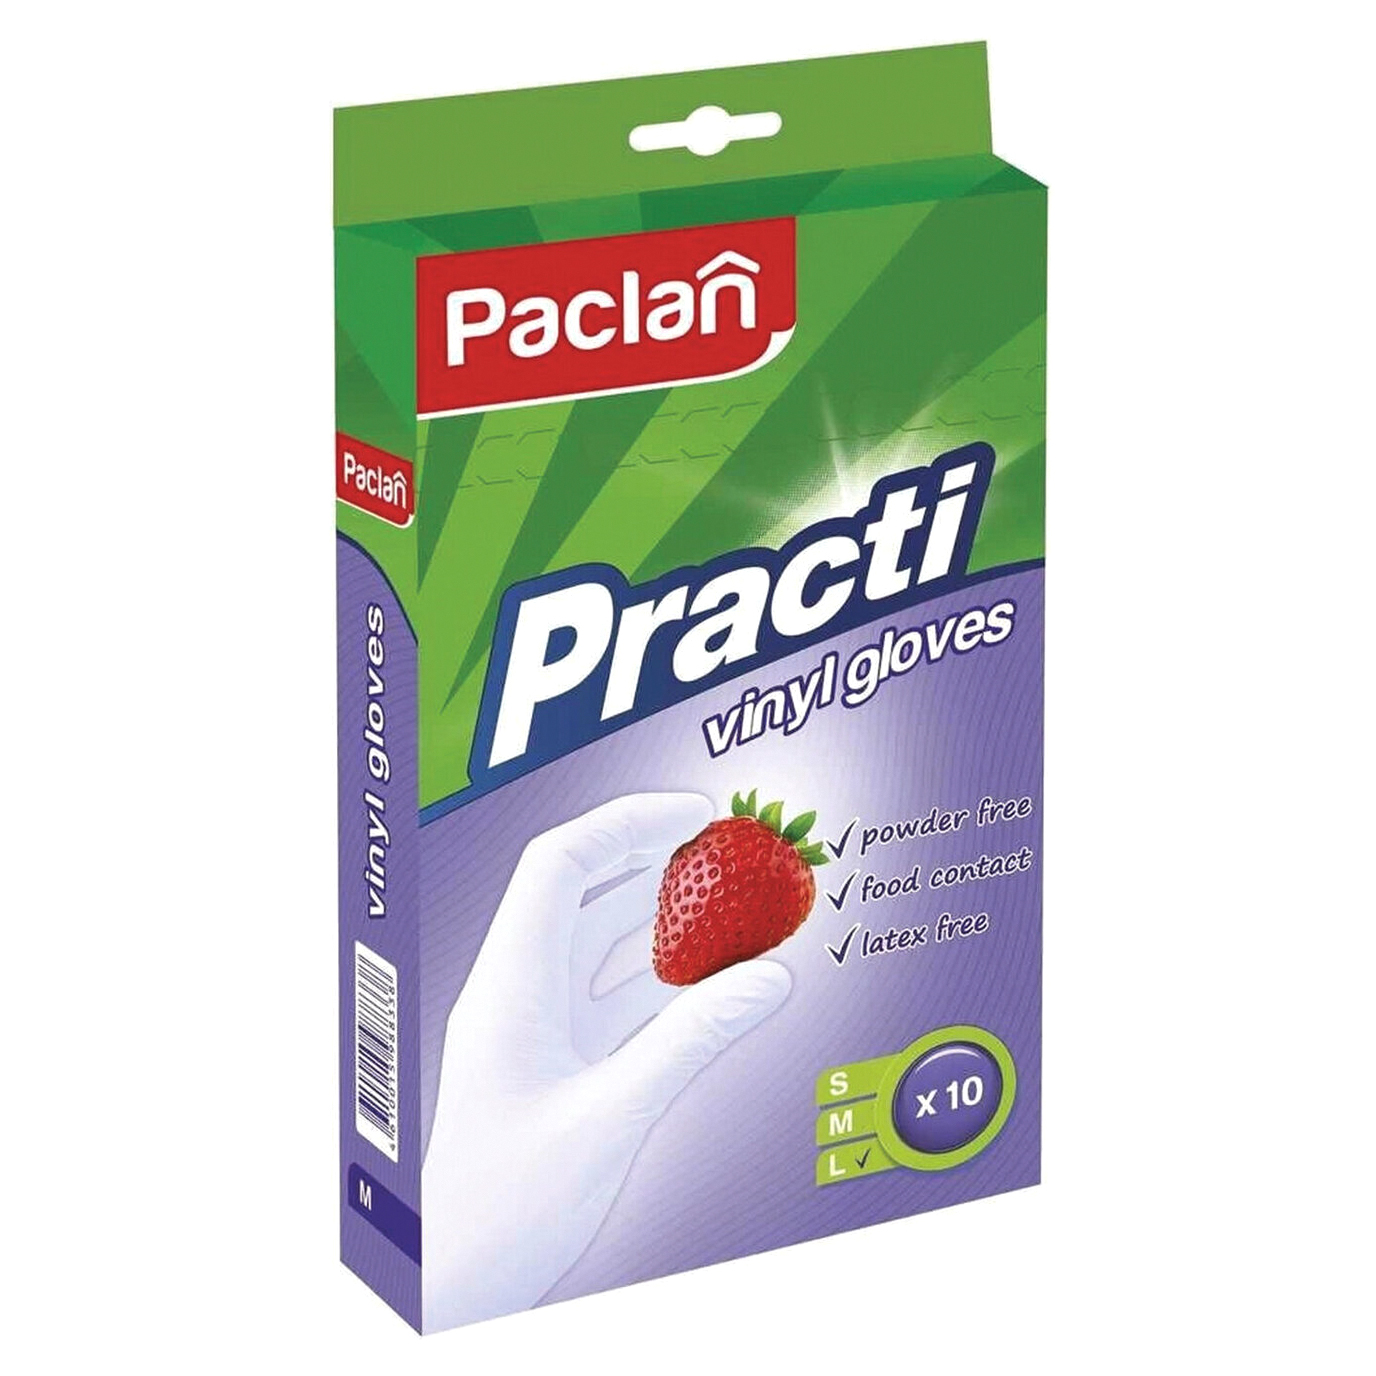 перчатки paclan виниловые m 100 шт Перчатки Paclan Practi виниловые L 10 шт